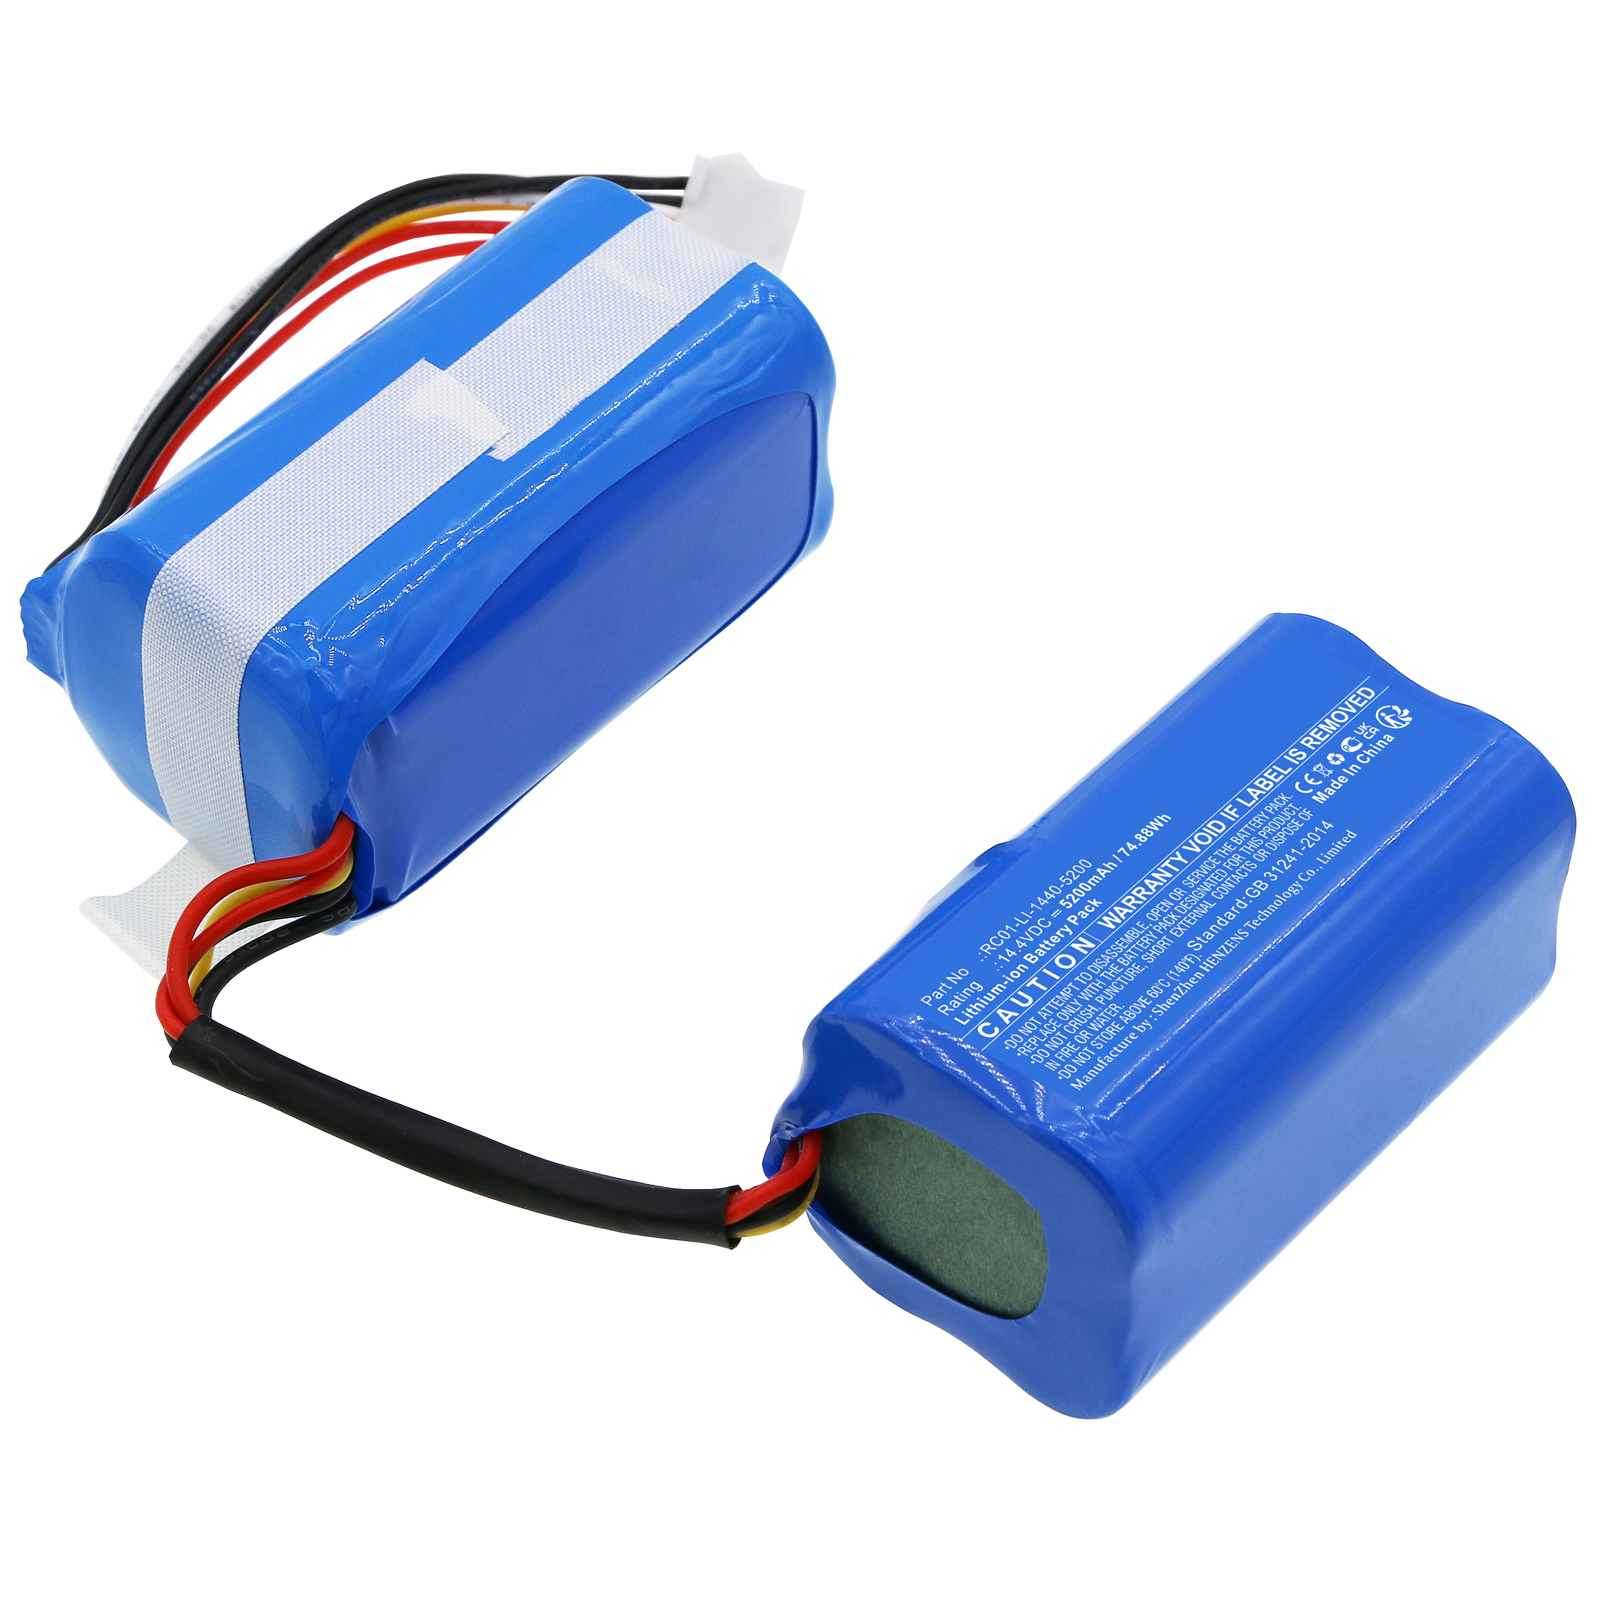 Synergy Digital Vacuum Cleaner Battery, Compatible with Ecovacs RC01-LI-1440-5200 Vacuum Cleaner Battery (Li-ion, 14.4V, 5200mAh)